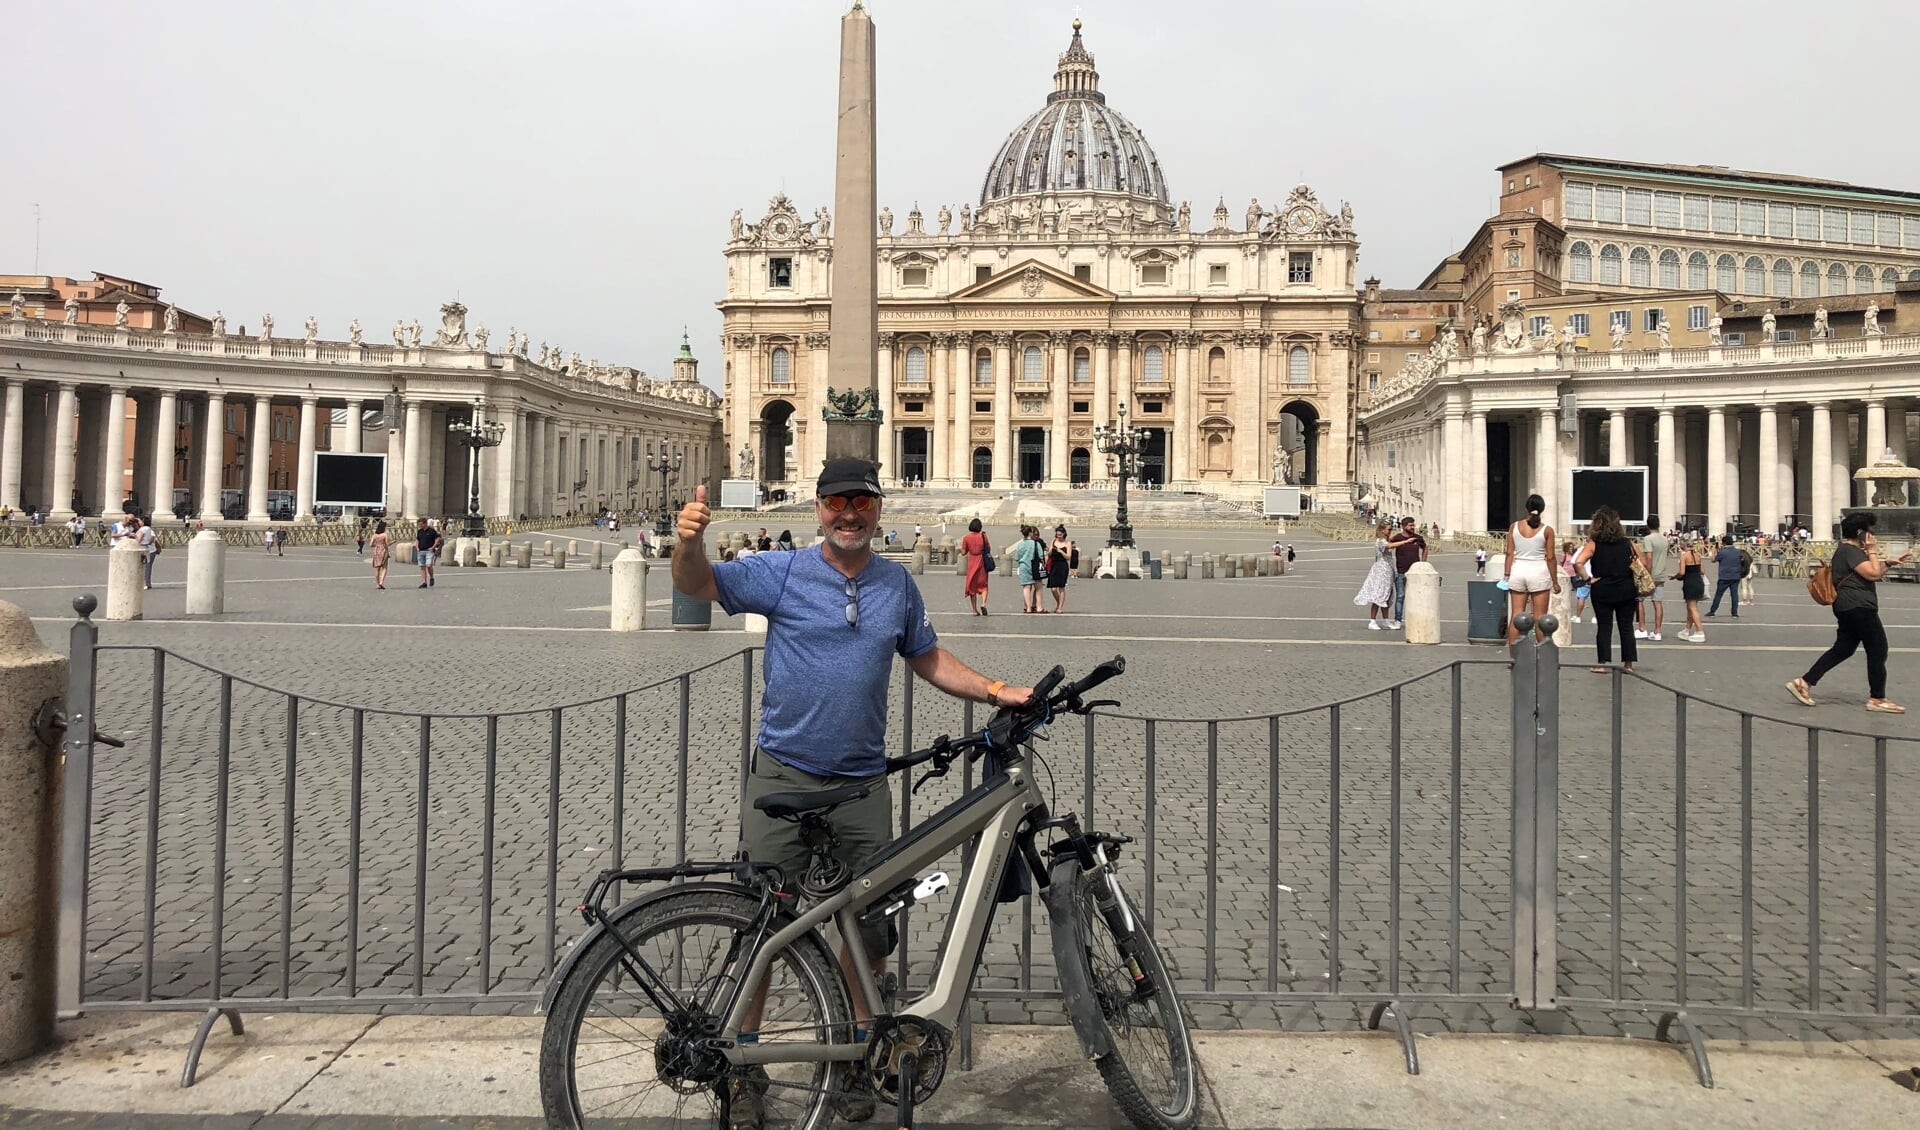 Pierre Hogers bereikt na 23 dagen Rome. ,,Ik heb mijzelf leren kennen tijdens deze tocht.